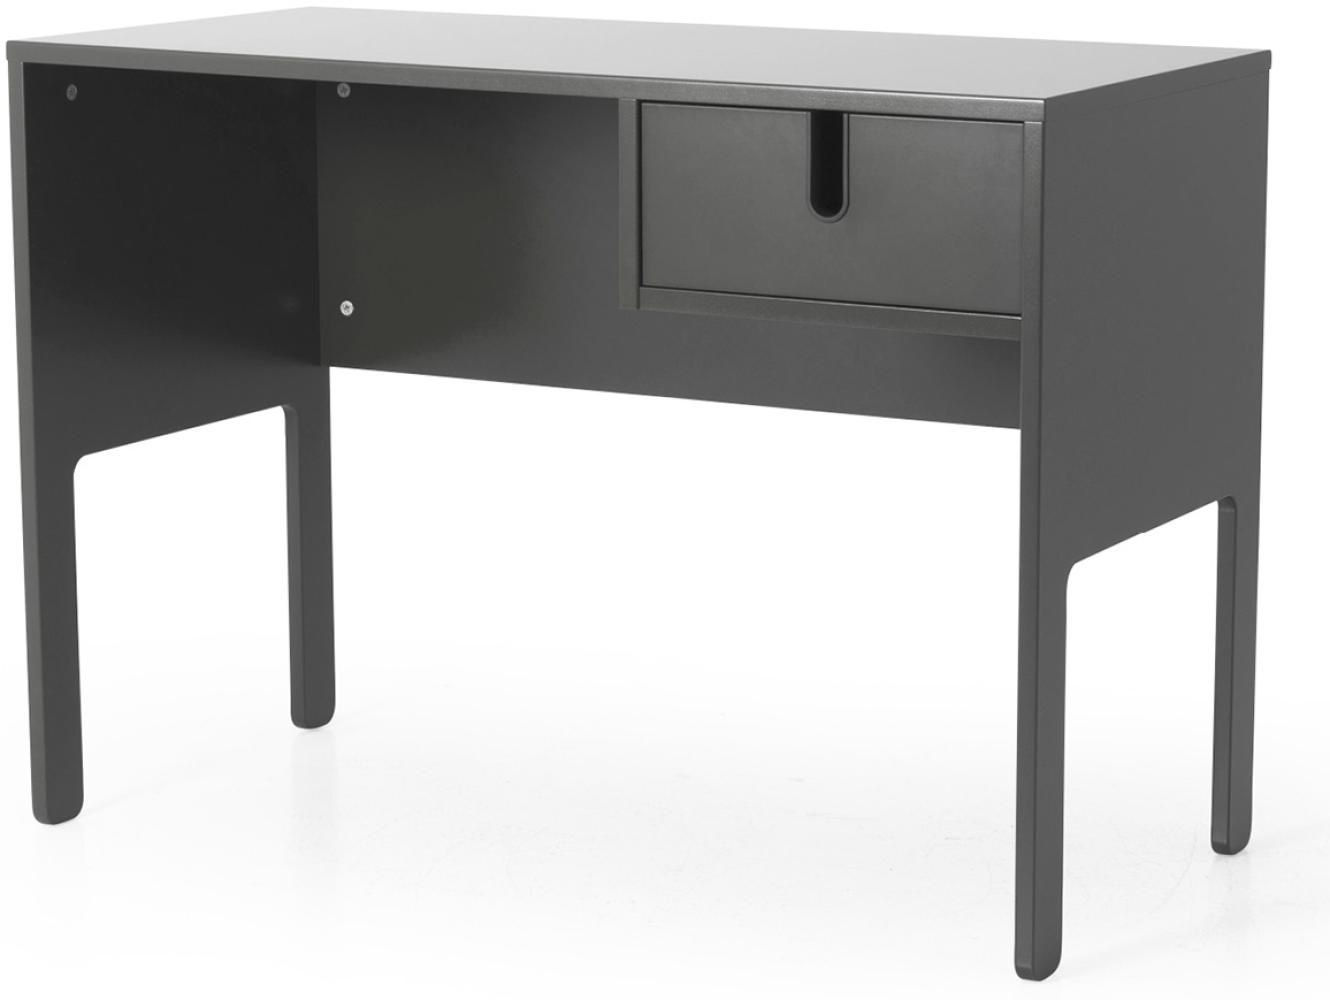 'Colour' Schreibtisch mit Schublade, Grau, 75 x 105 x 50 cm Bild 1